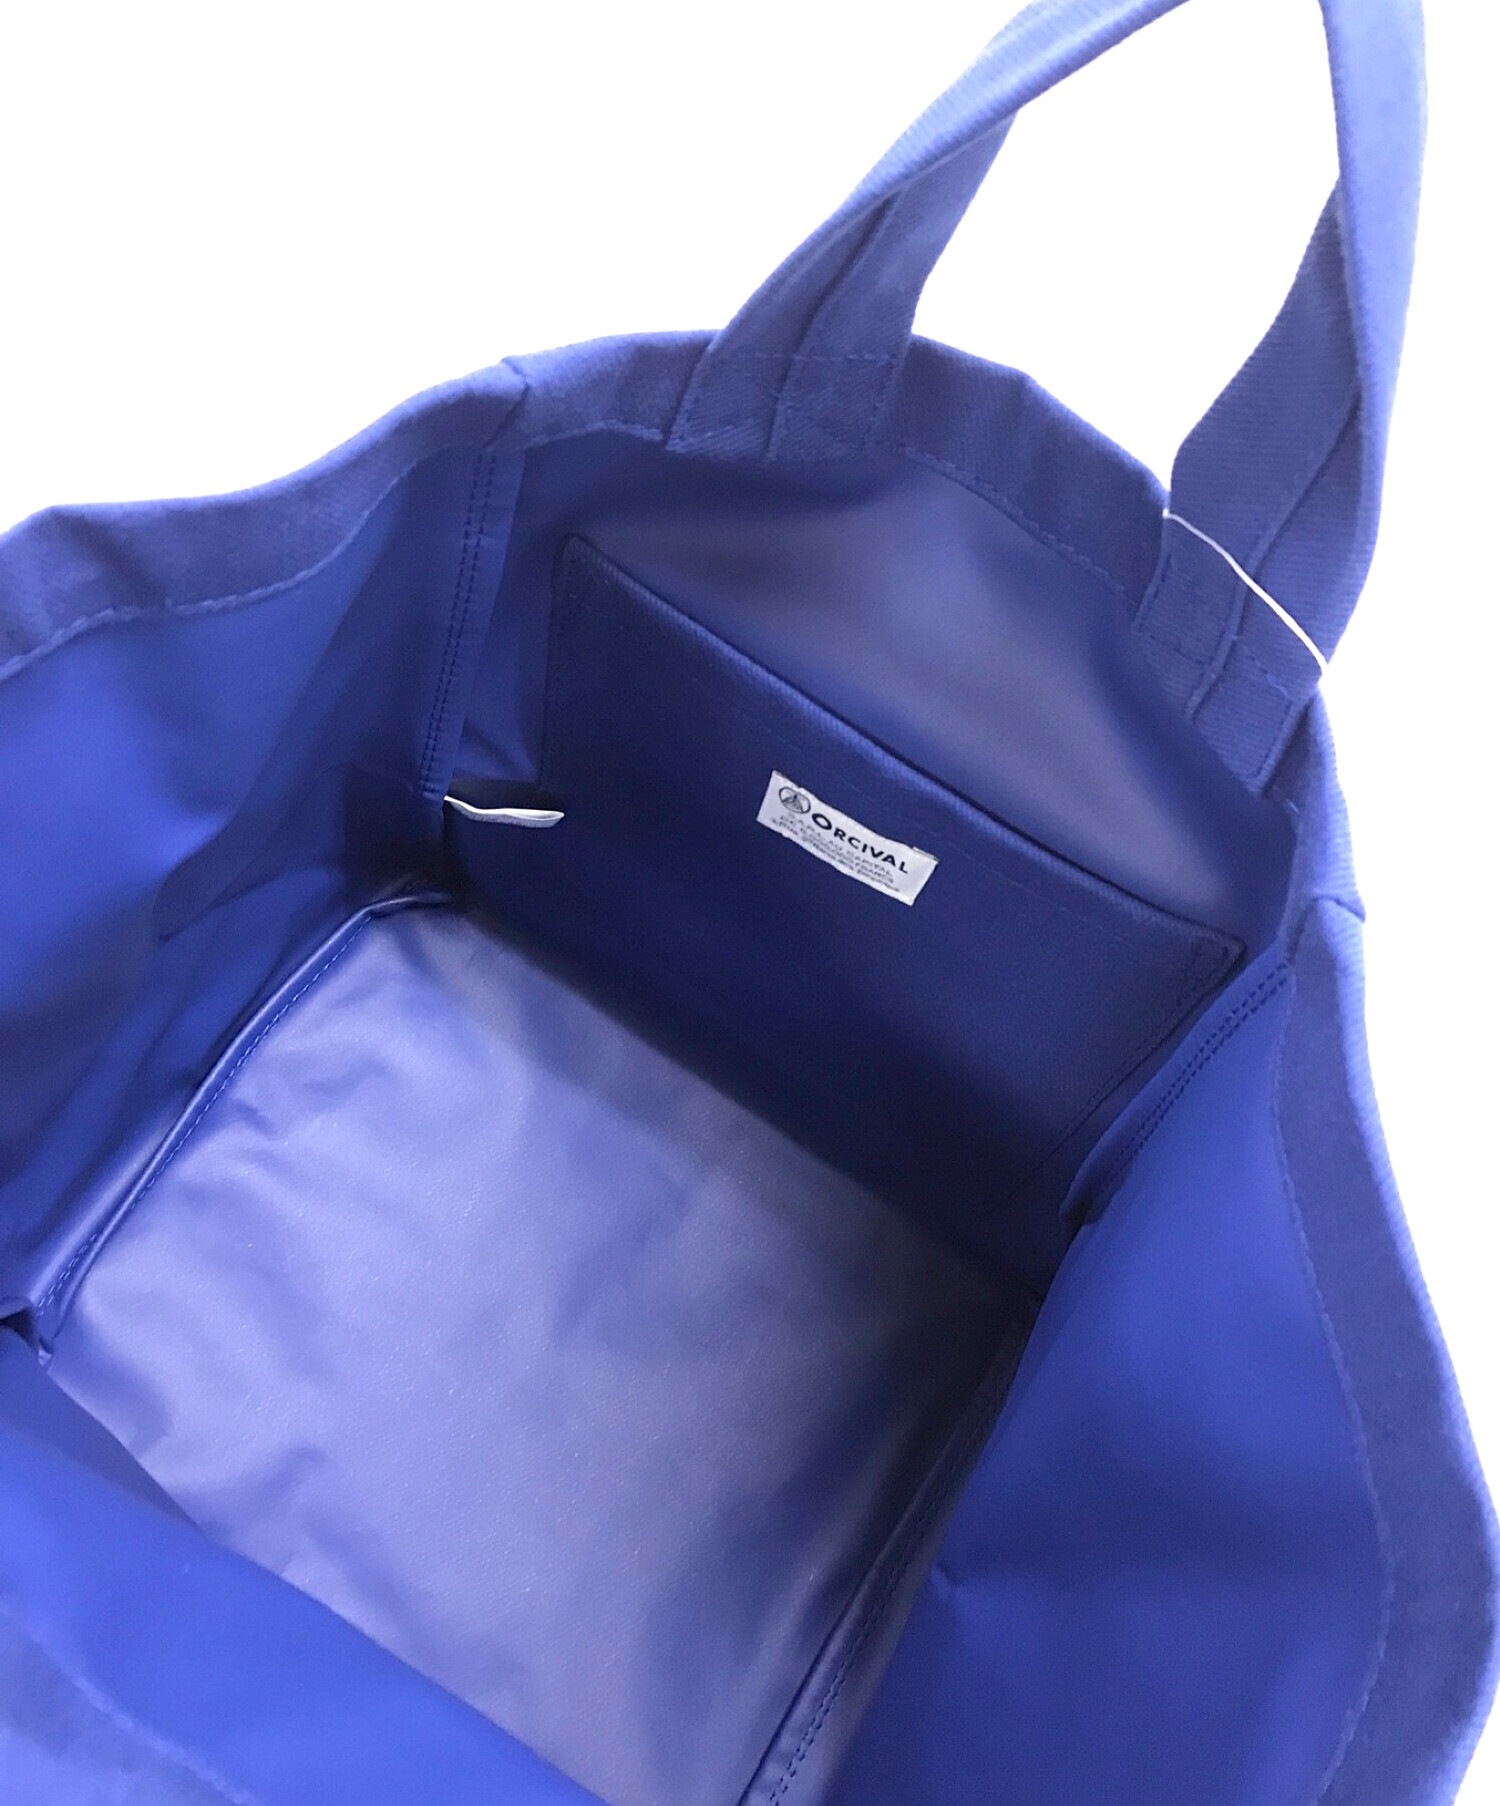 ORCIVAL (オーシバル) アクリルコットンキャンバストートバッグ ブルー サイズ:実寸サイズにてご確認ください。 未使用品